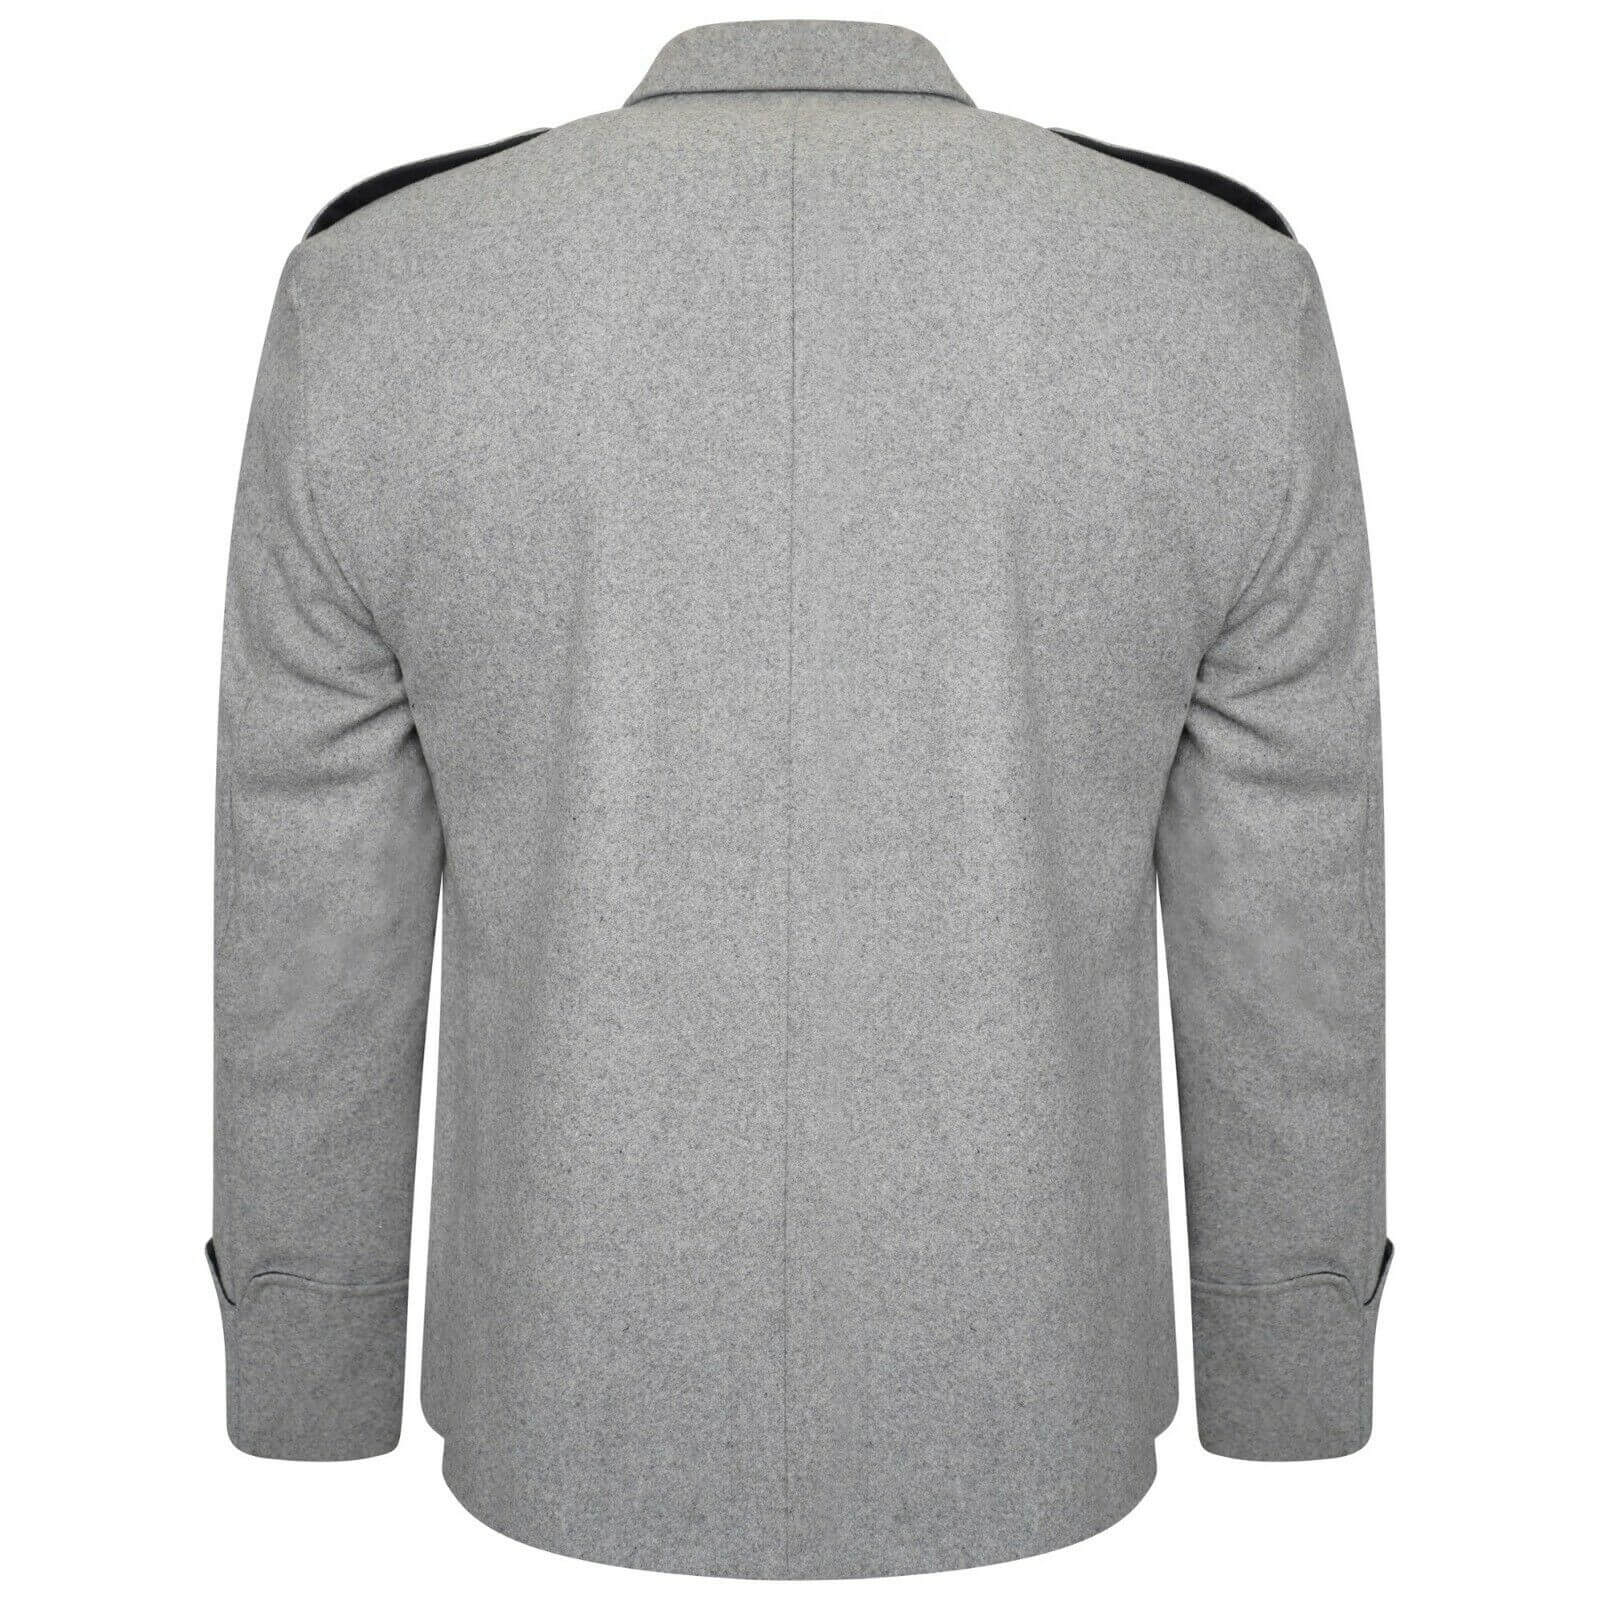 Scottish Argyle Jacket Blue 100% WOOL Argyle kilt Jacket & Waistcoat/Vest 